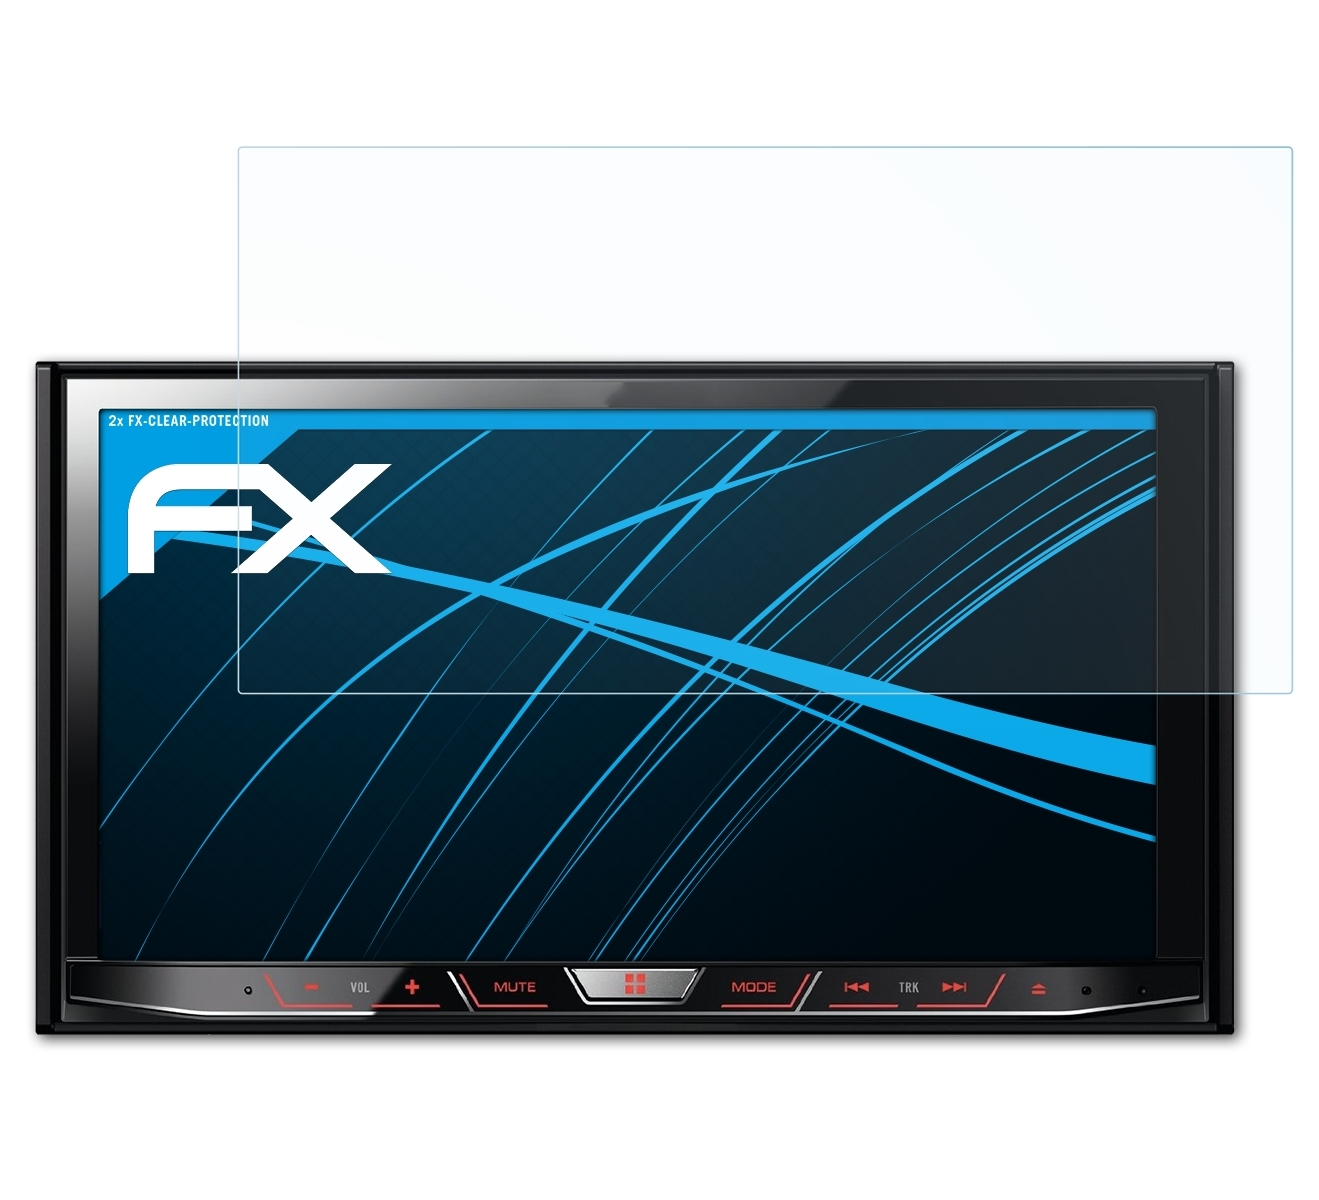 Pioneer ATFOLIX FX-Clear AVH-X8600BT) 2x Displayschutz(für